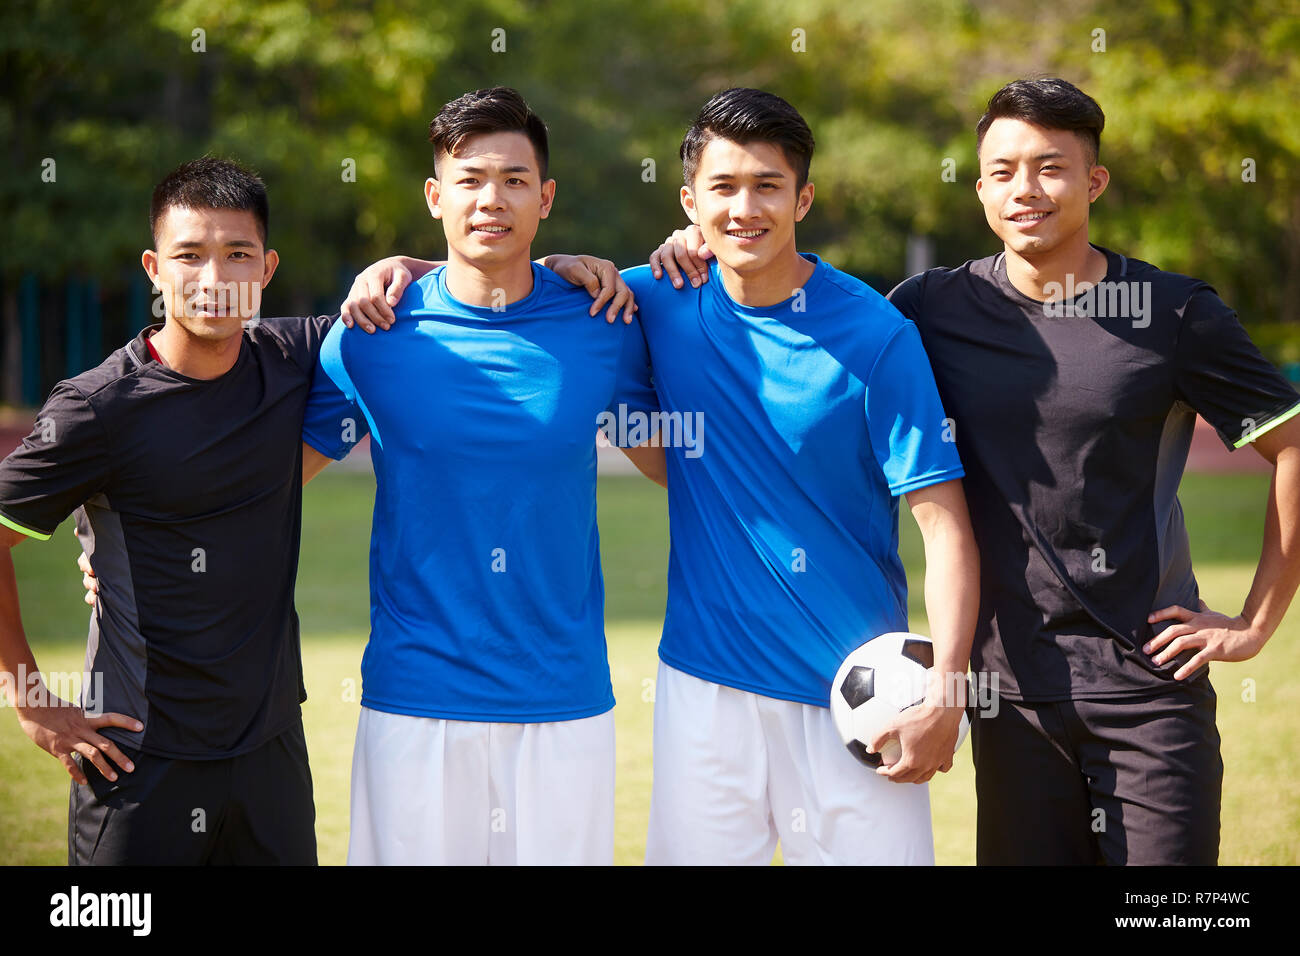 Portrait en extérieur d'une équipe de jeunes joueurs de football football asiatique Banque D'Images